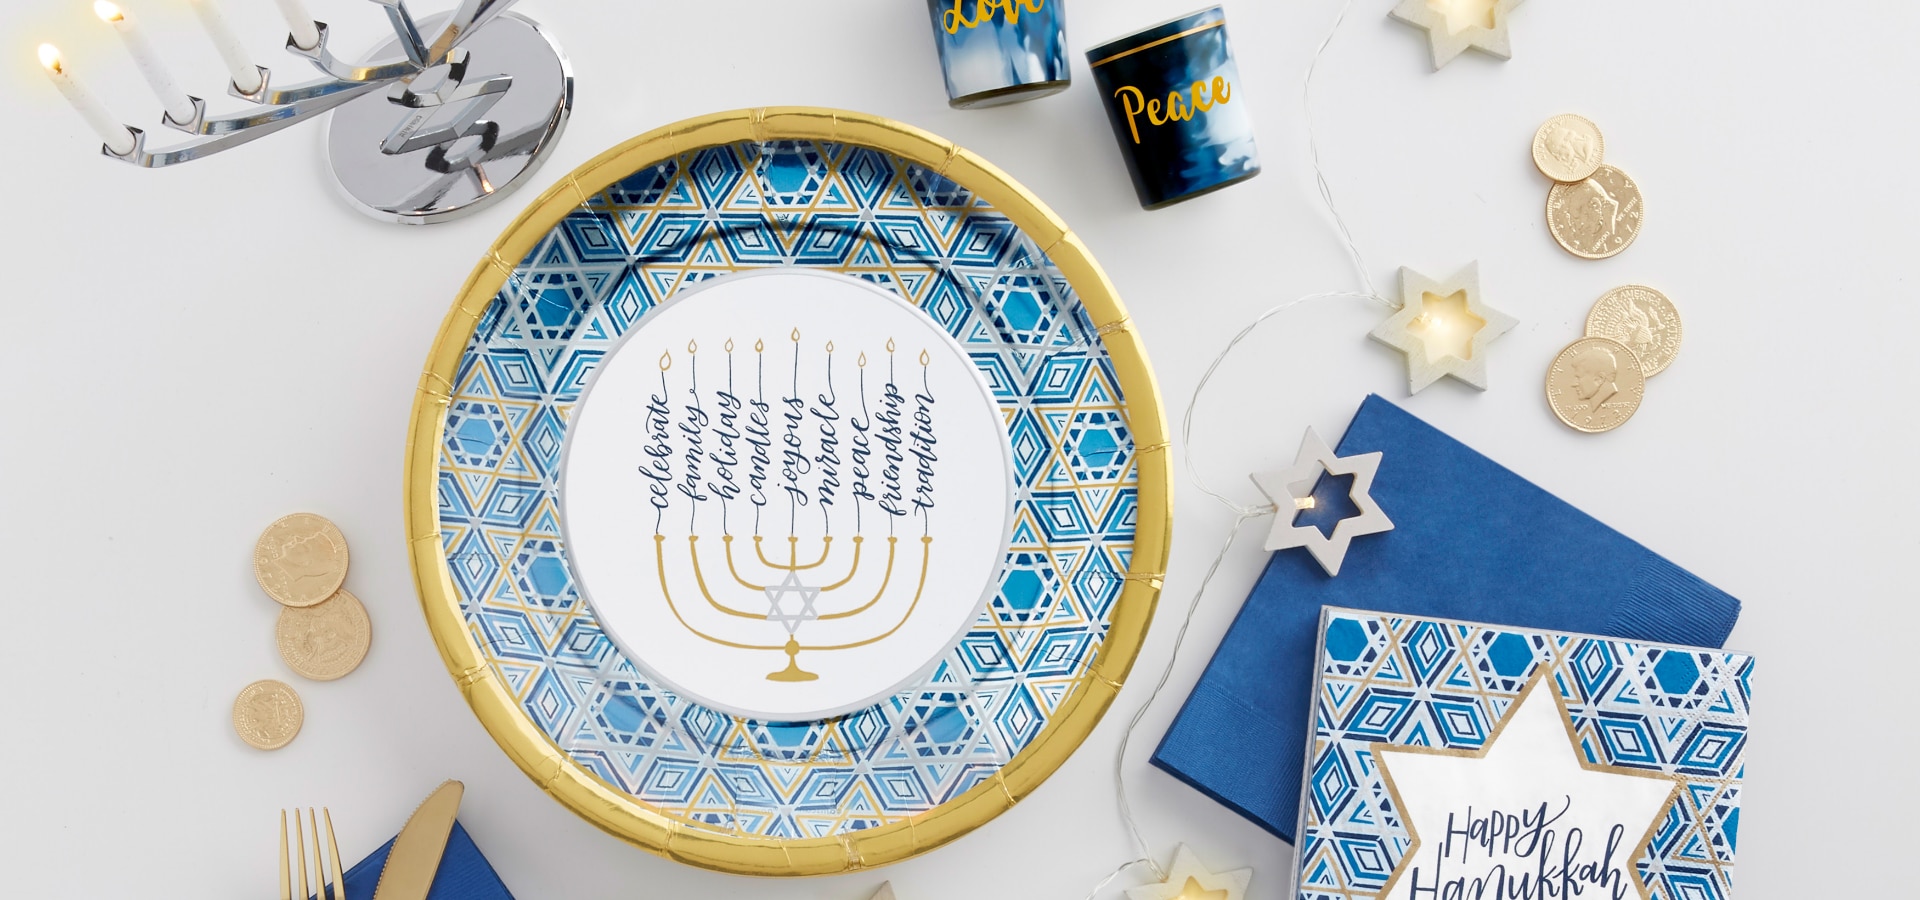 Une table agrémentée d'un chemin de table de la Hanoukka bleu marine, d'une ménorah de couleur argent et d'autres services de vaisselle et accessoires de couleur bleue, argent et or.